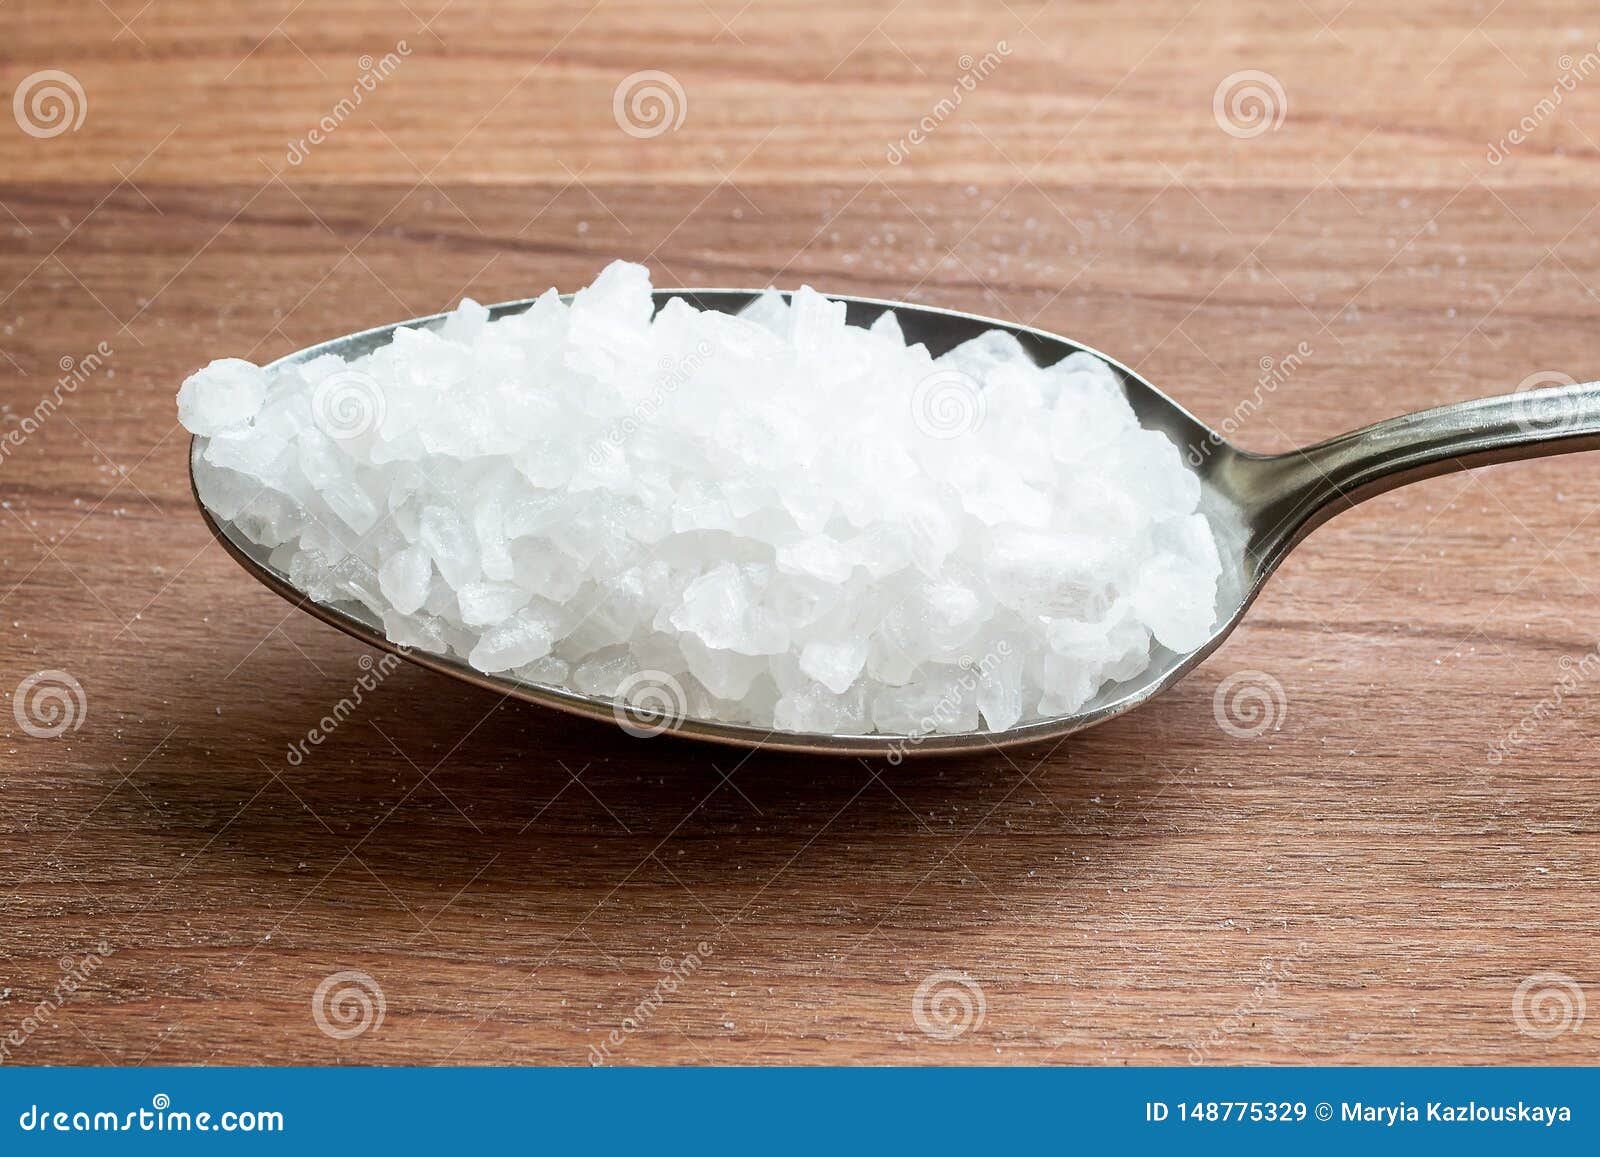 Крупная соль сколько в ложке. Ложка с сахаром на столе. Крупная соль ложка. Крупная соль кристаллами для еды. Крупная соль горка ложка.